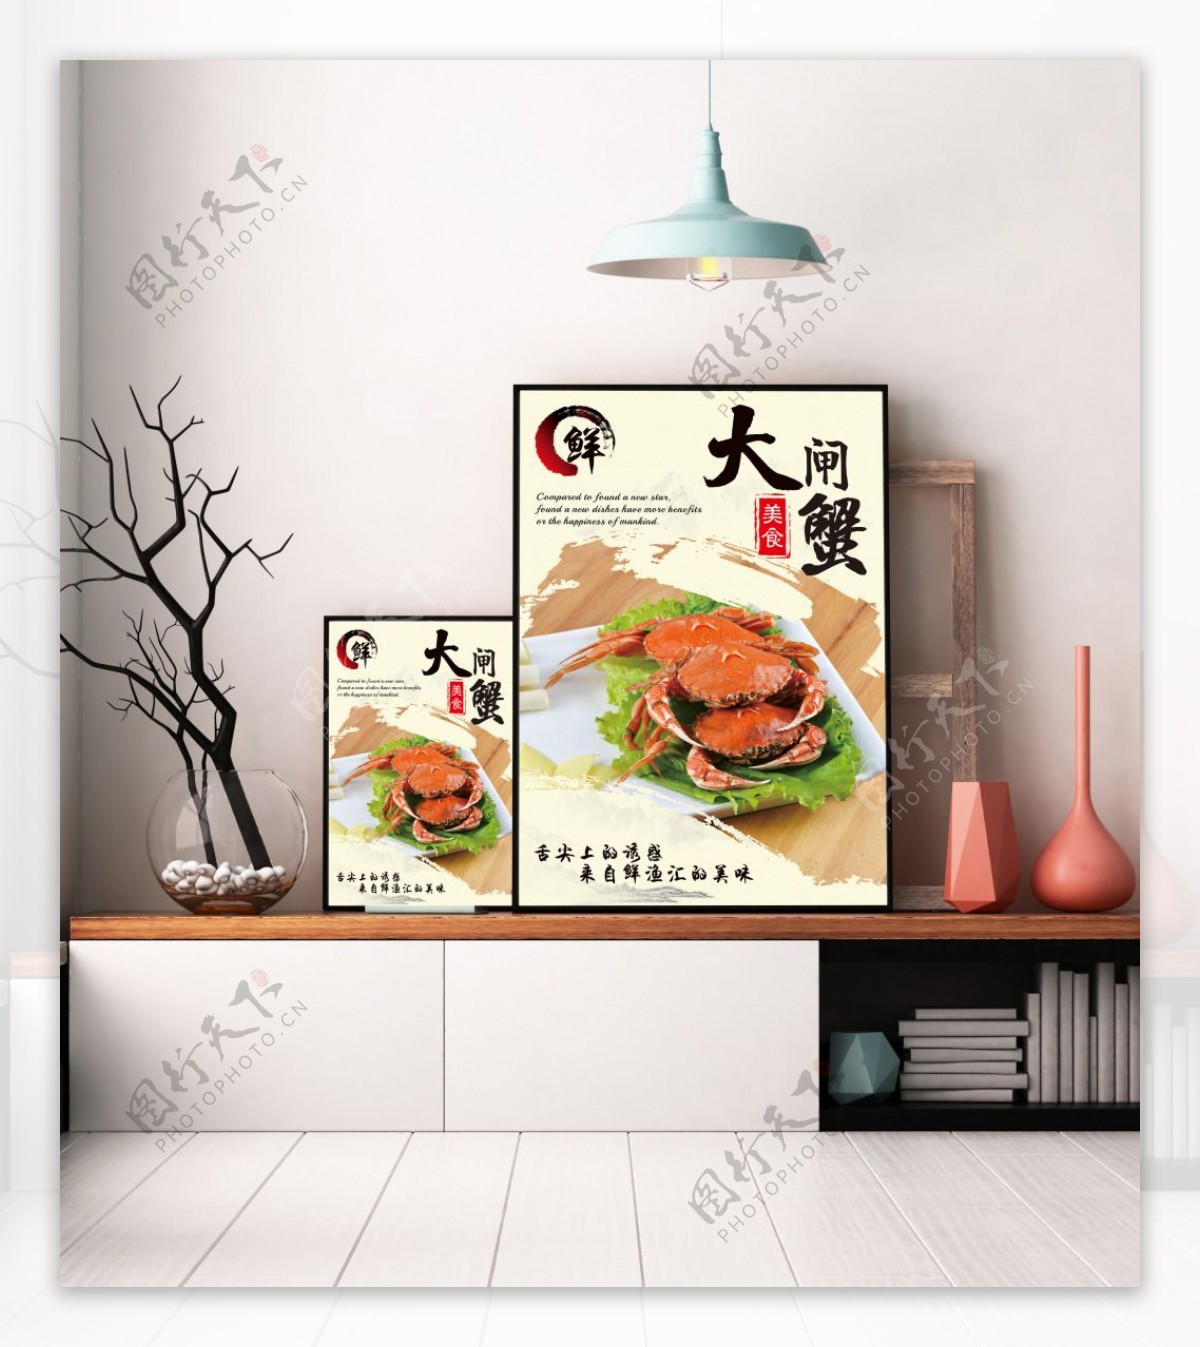 澄湖大闸蟹餐厅市肆中国风美食促销海报